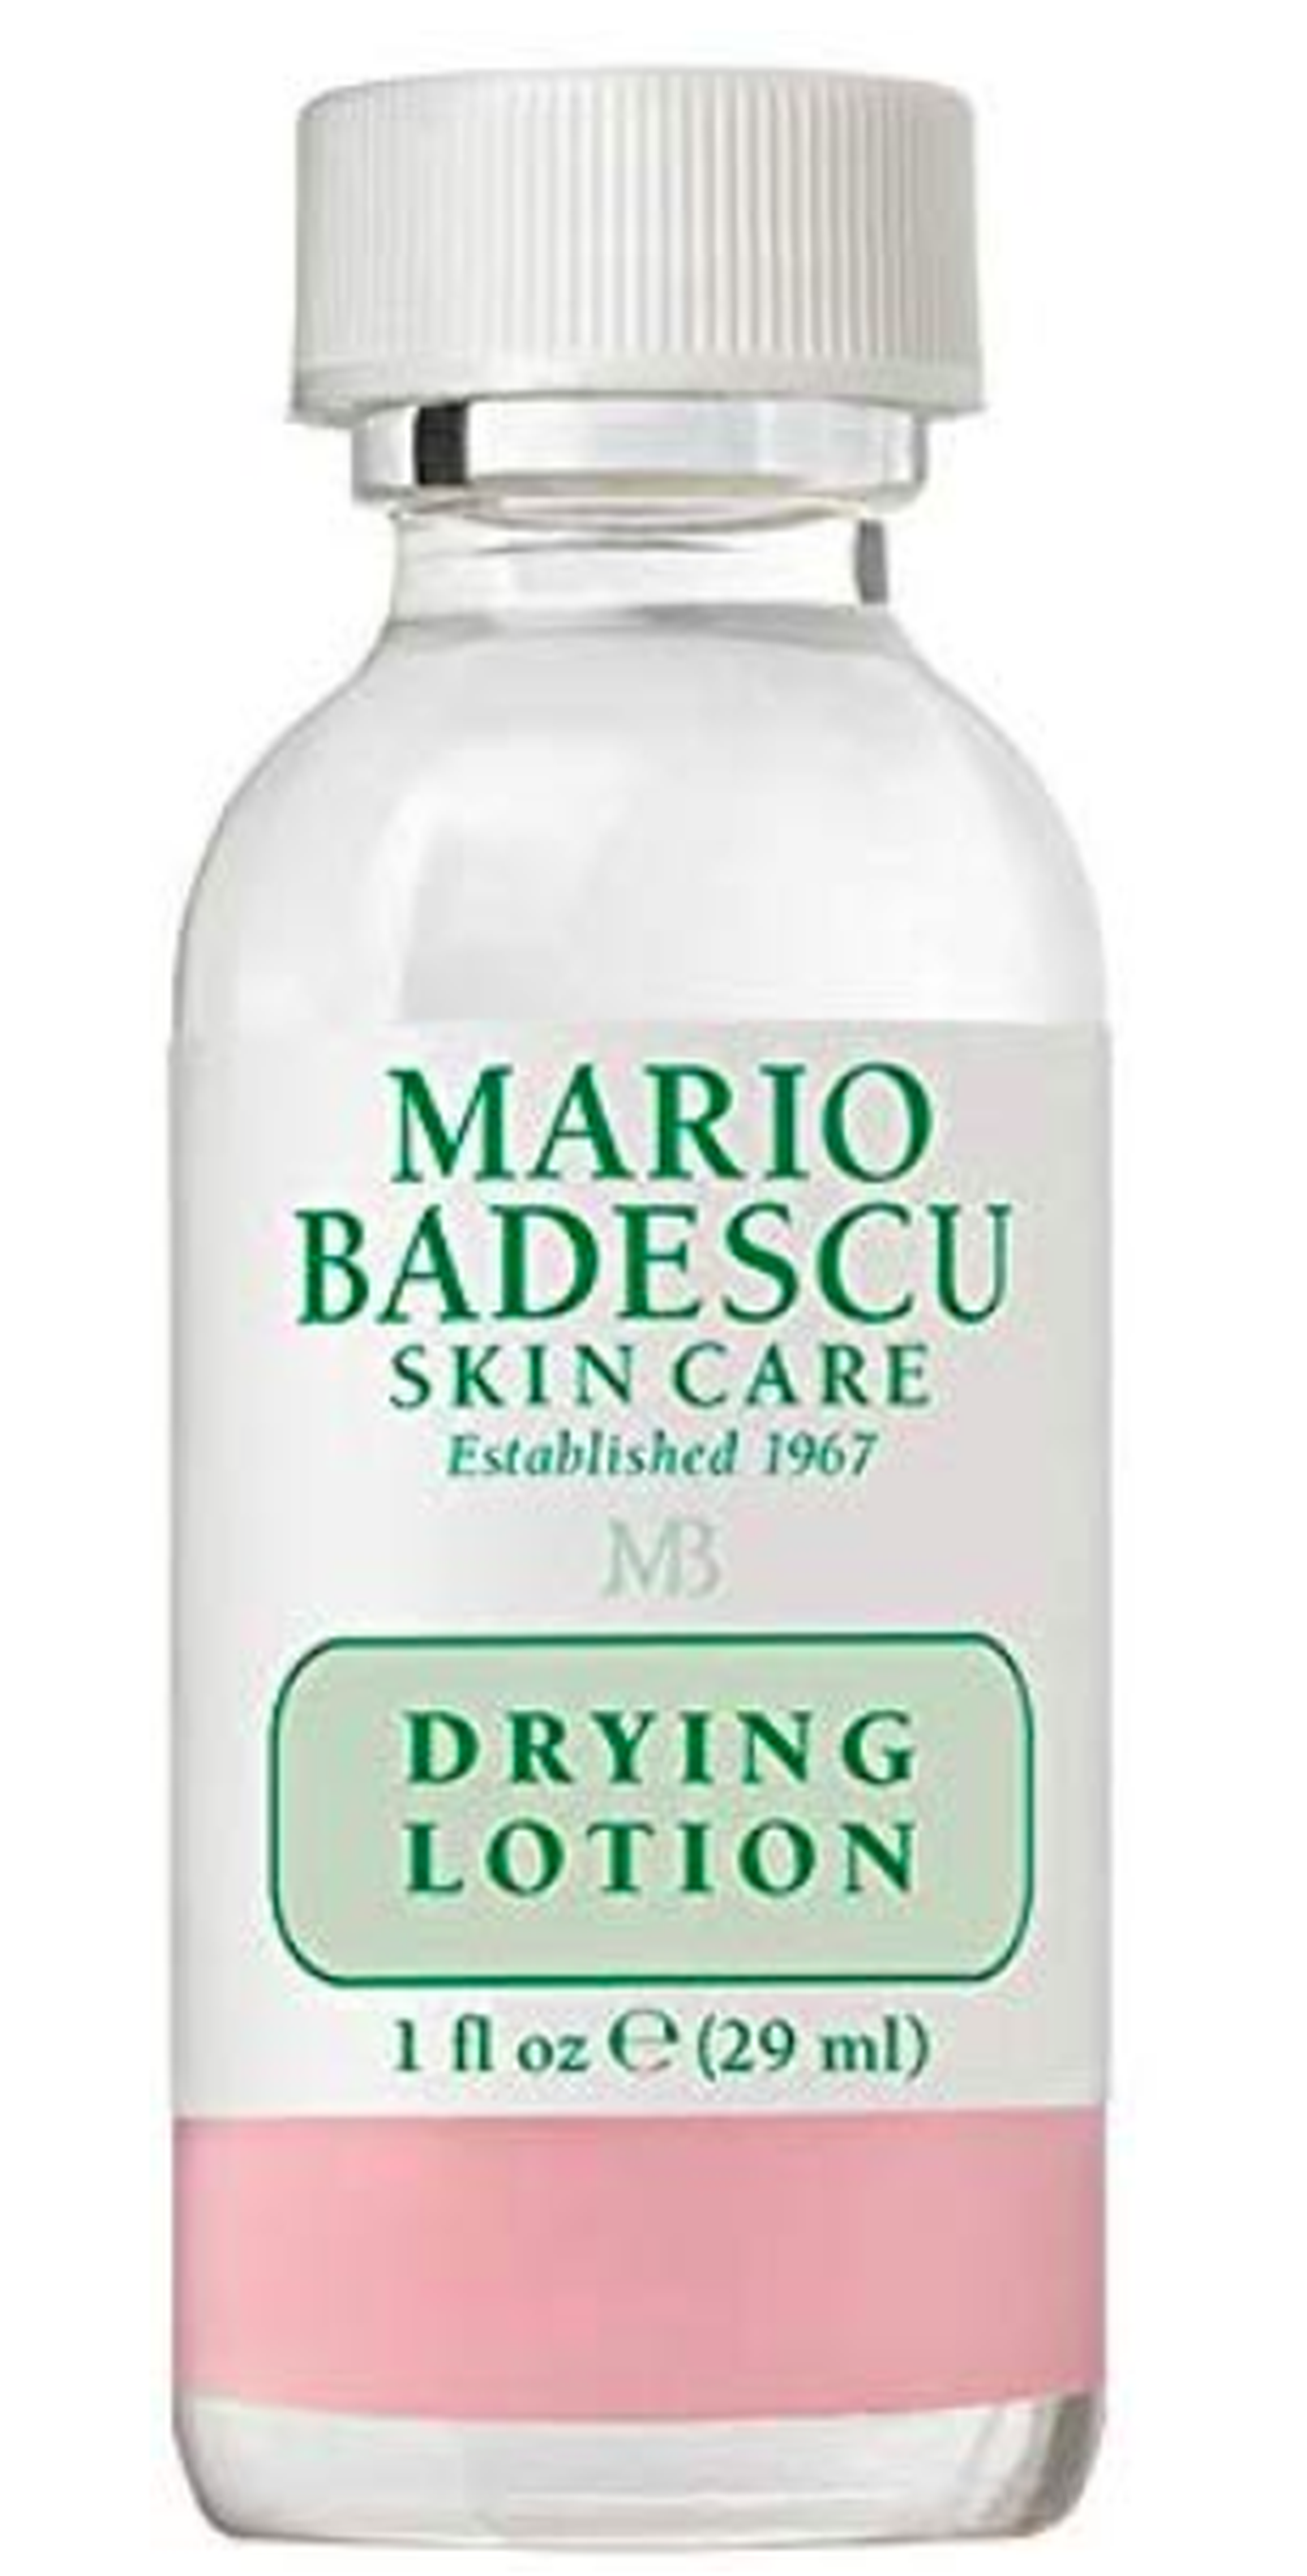 Drying lotion de Mario Badescu.